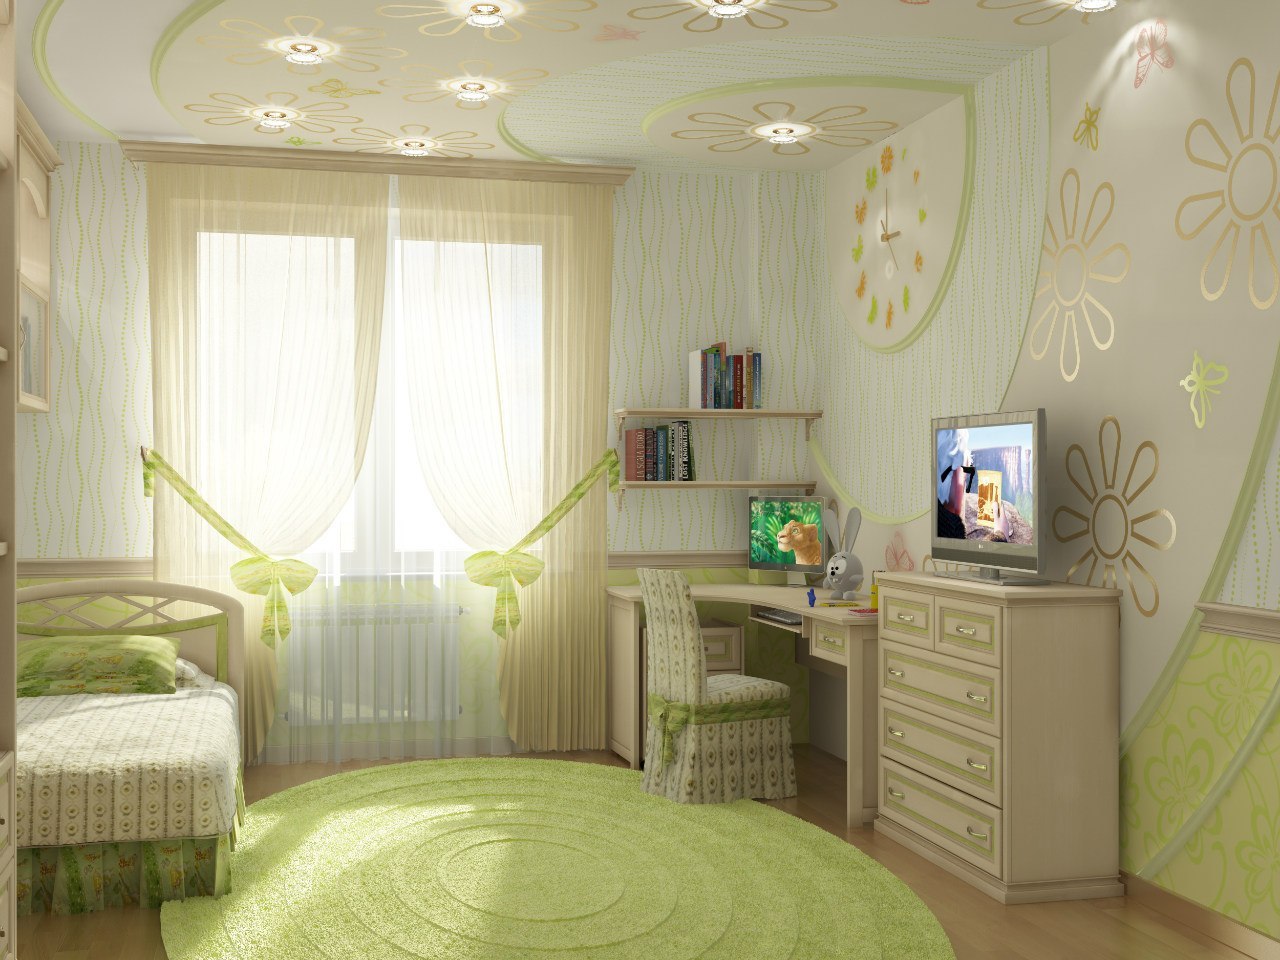 Conception de photo d'une chambre d'enfants dans des couleurs vives